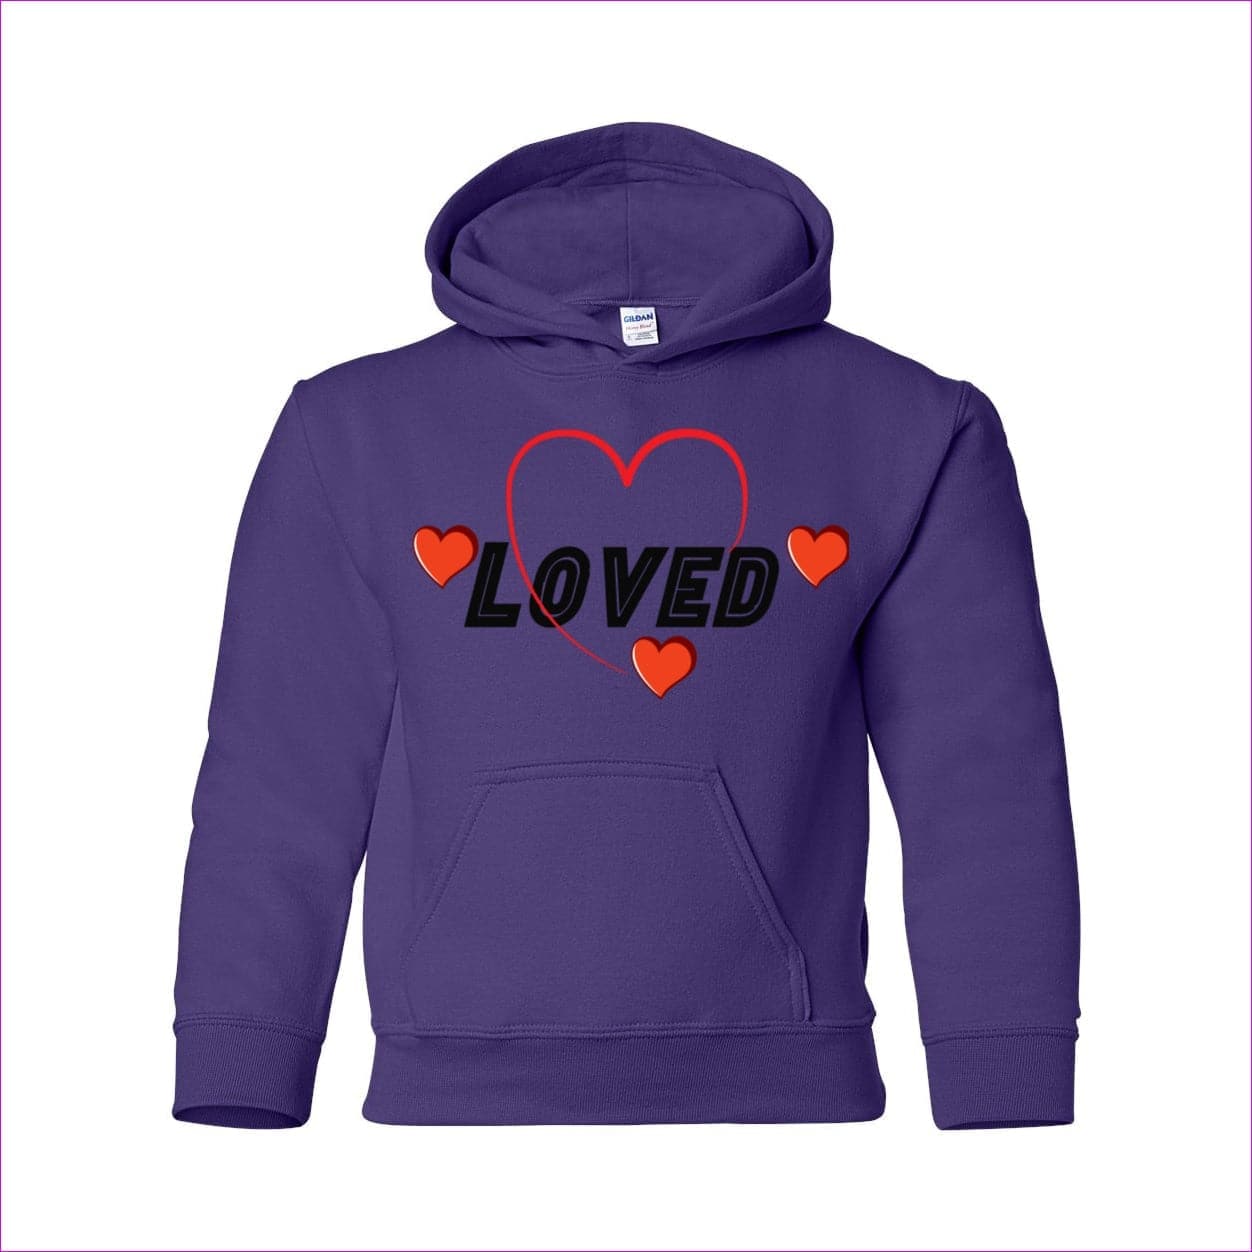 Purple - Loved Heavy Blend Youth Hooded Sweatshirt - kids hoodie at TFC&H Co.